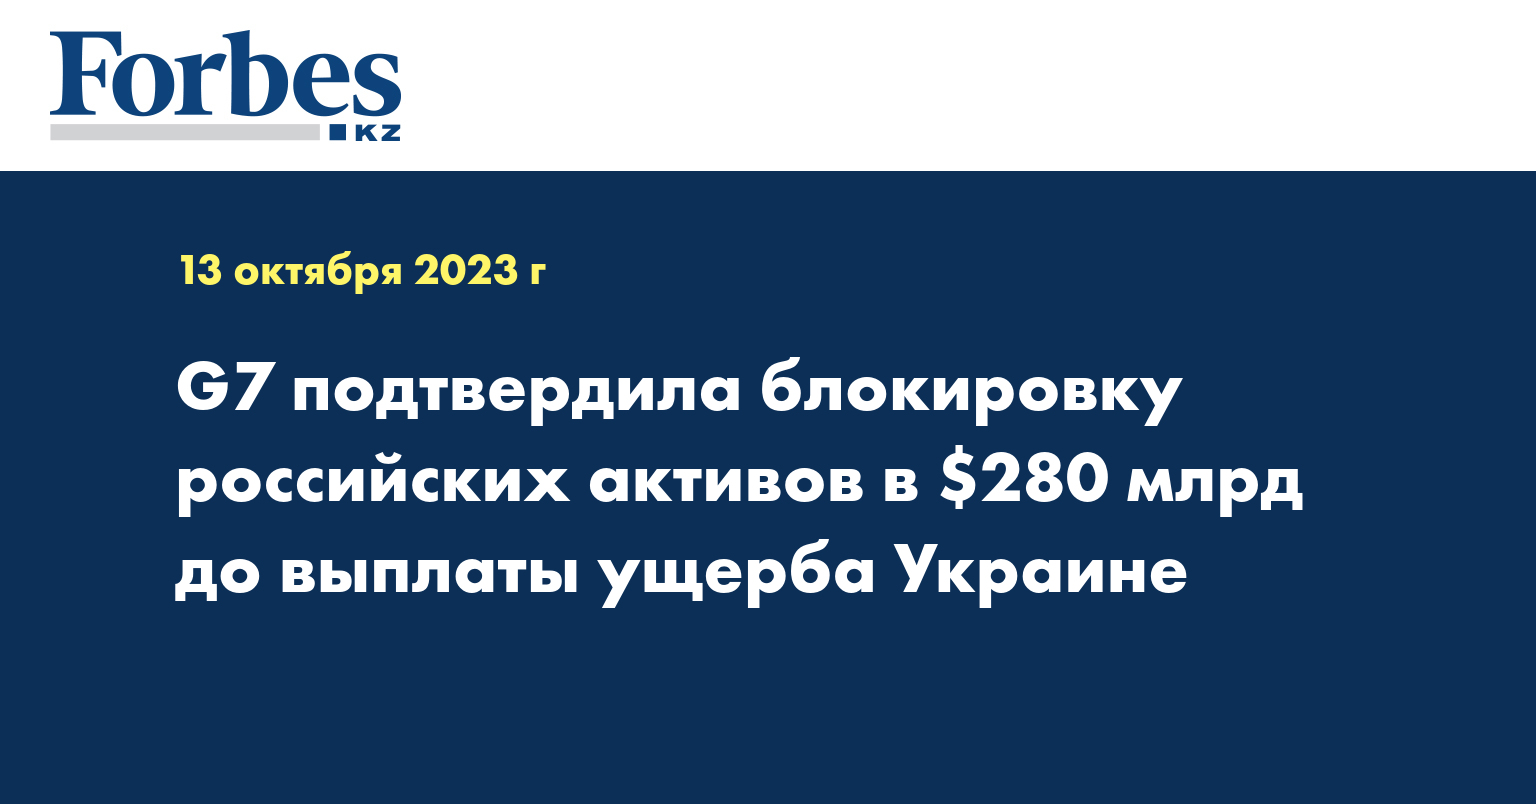 G7 подтвердила блокировку российских активов в $280 млрд до выплаты ущерба Украине